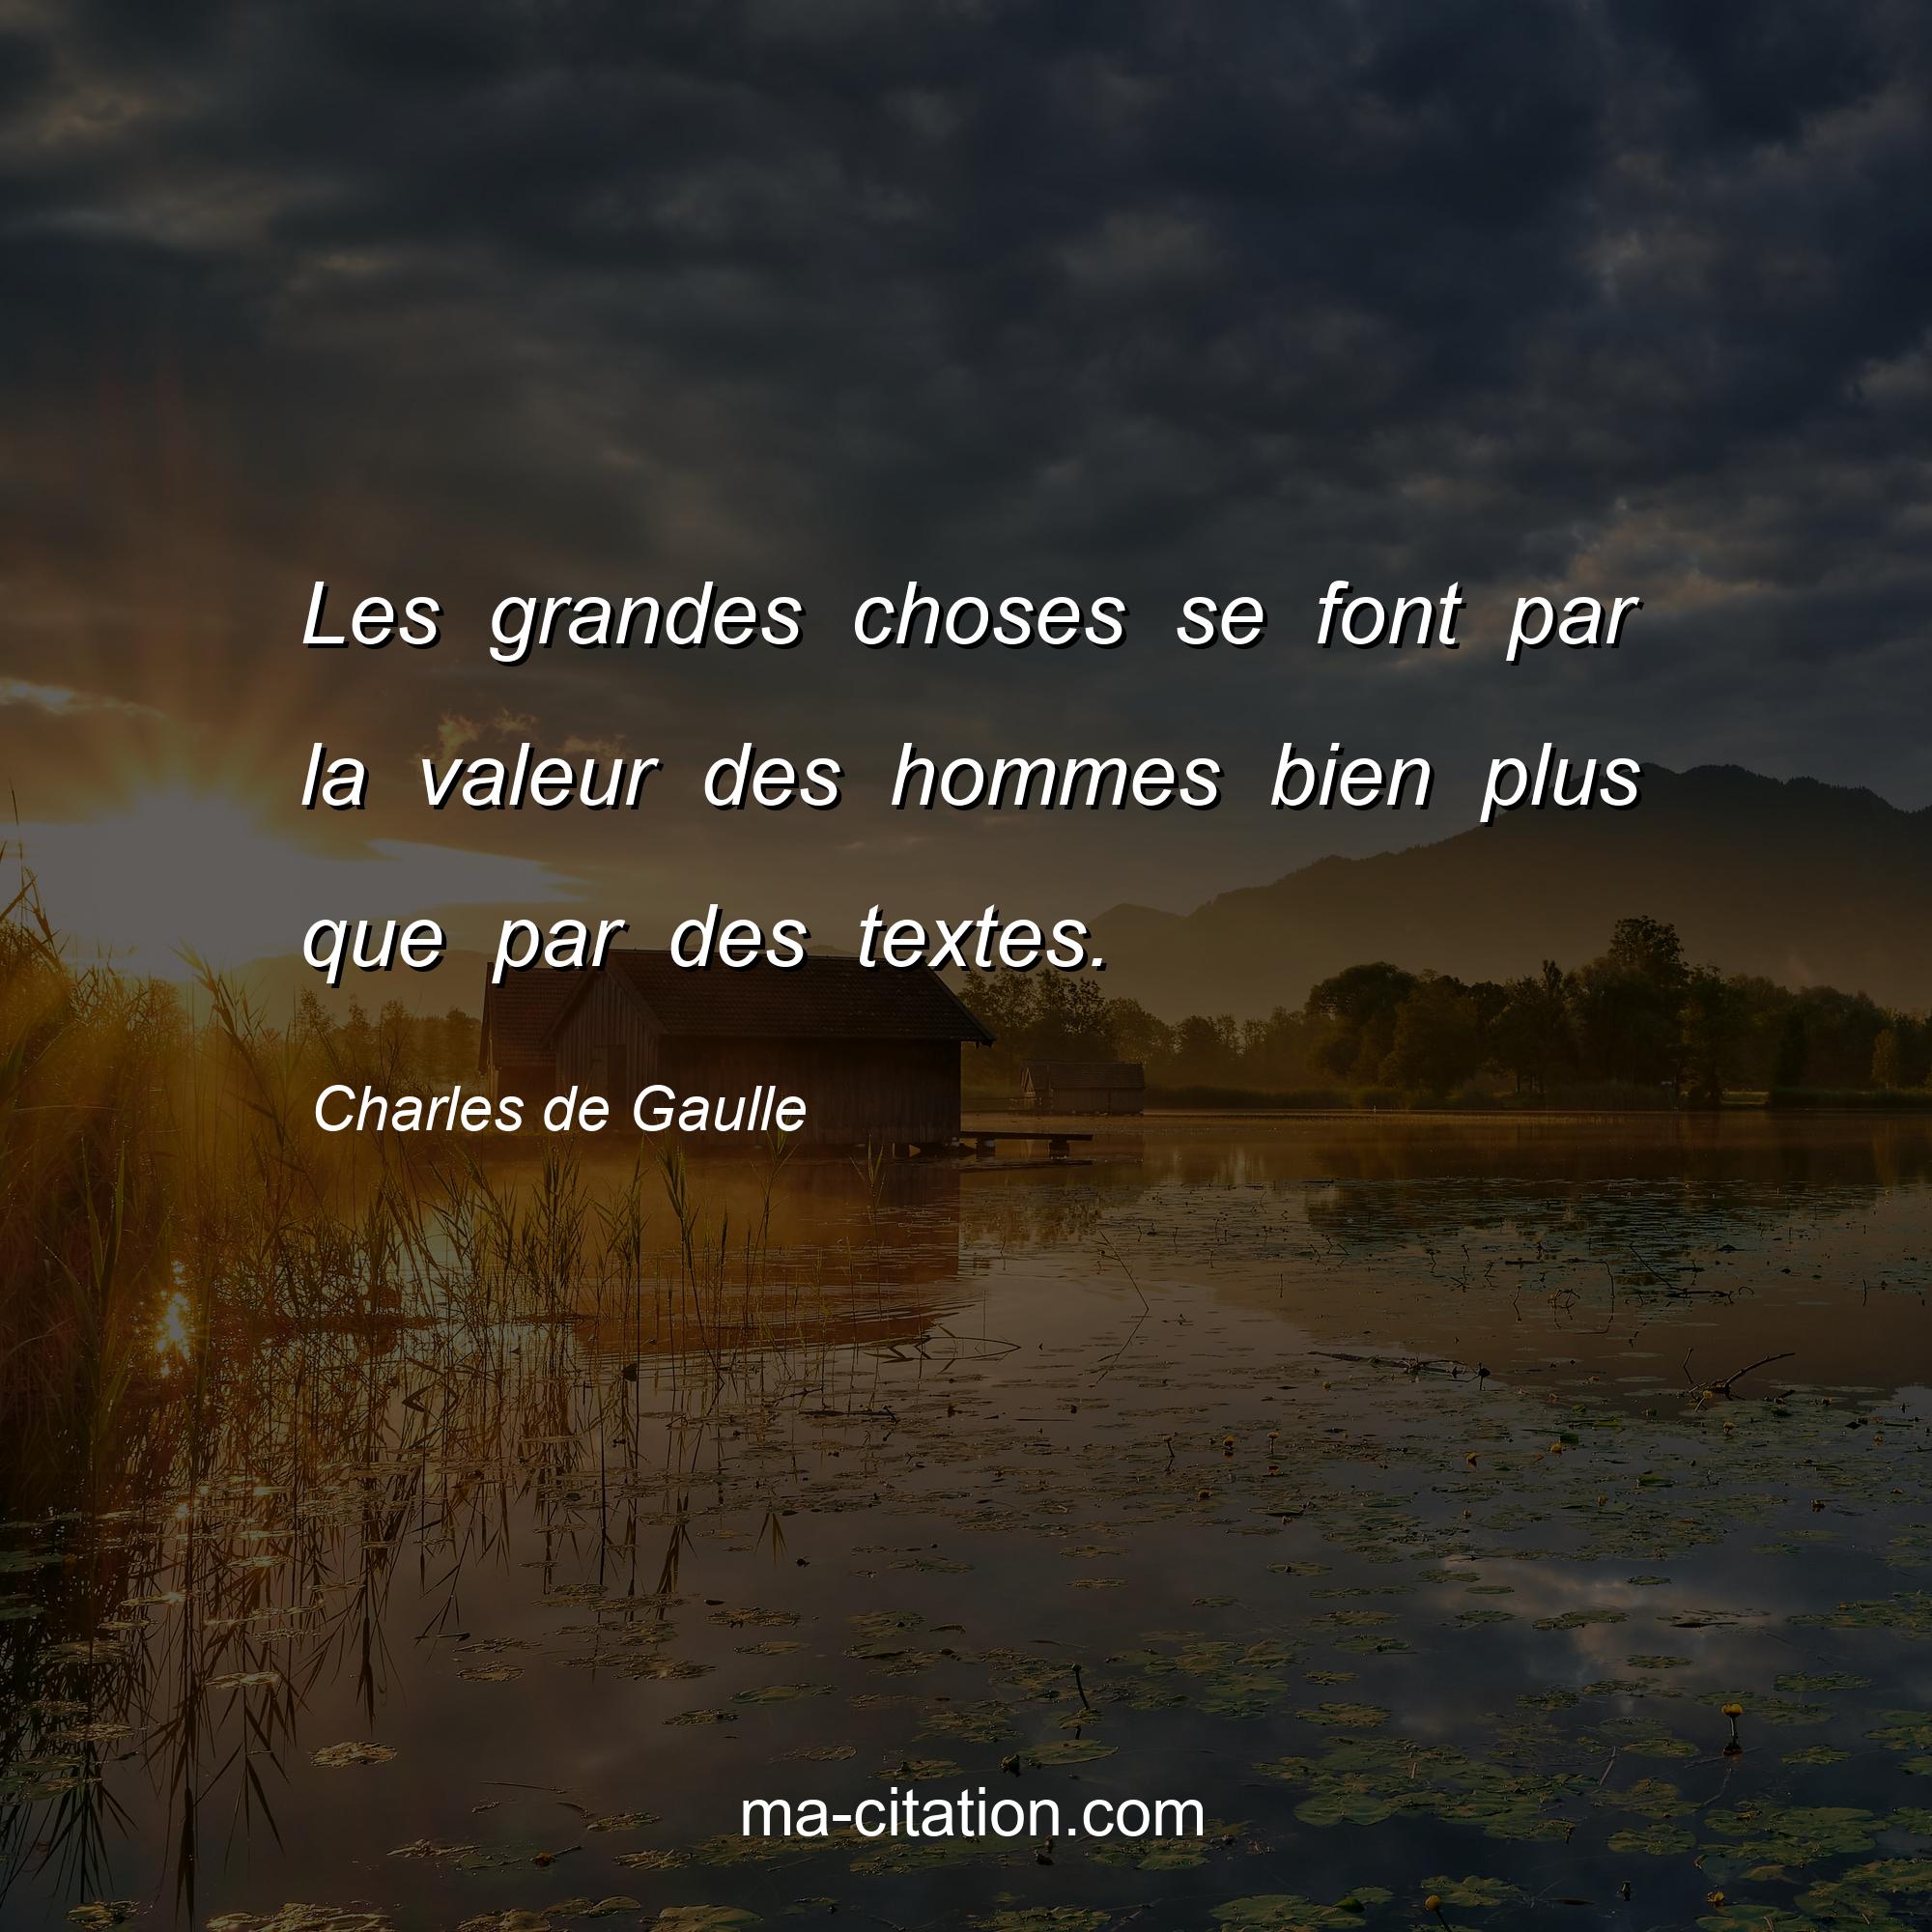 Charles de Gaulle : Les grandes choses se font par la valeur des hommes bien plus que par des textes.